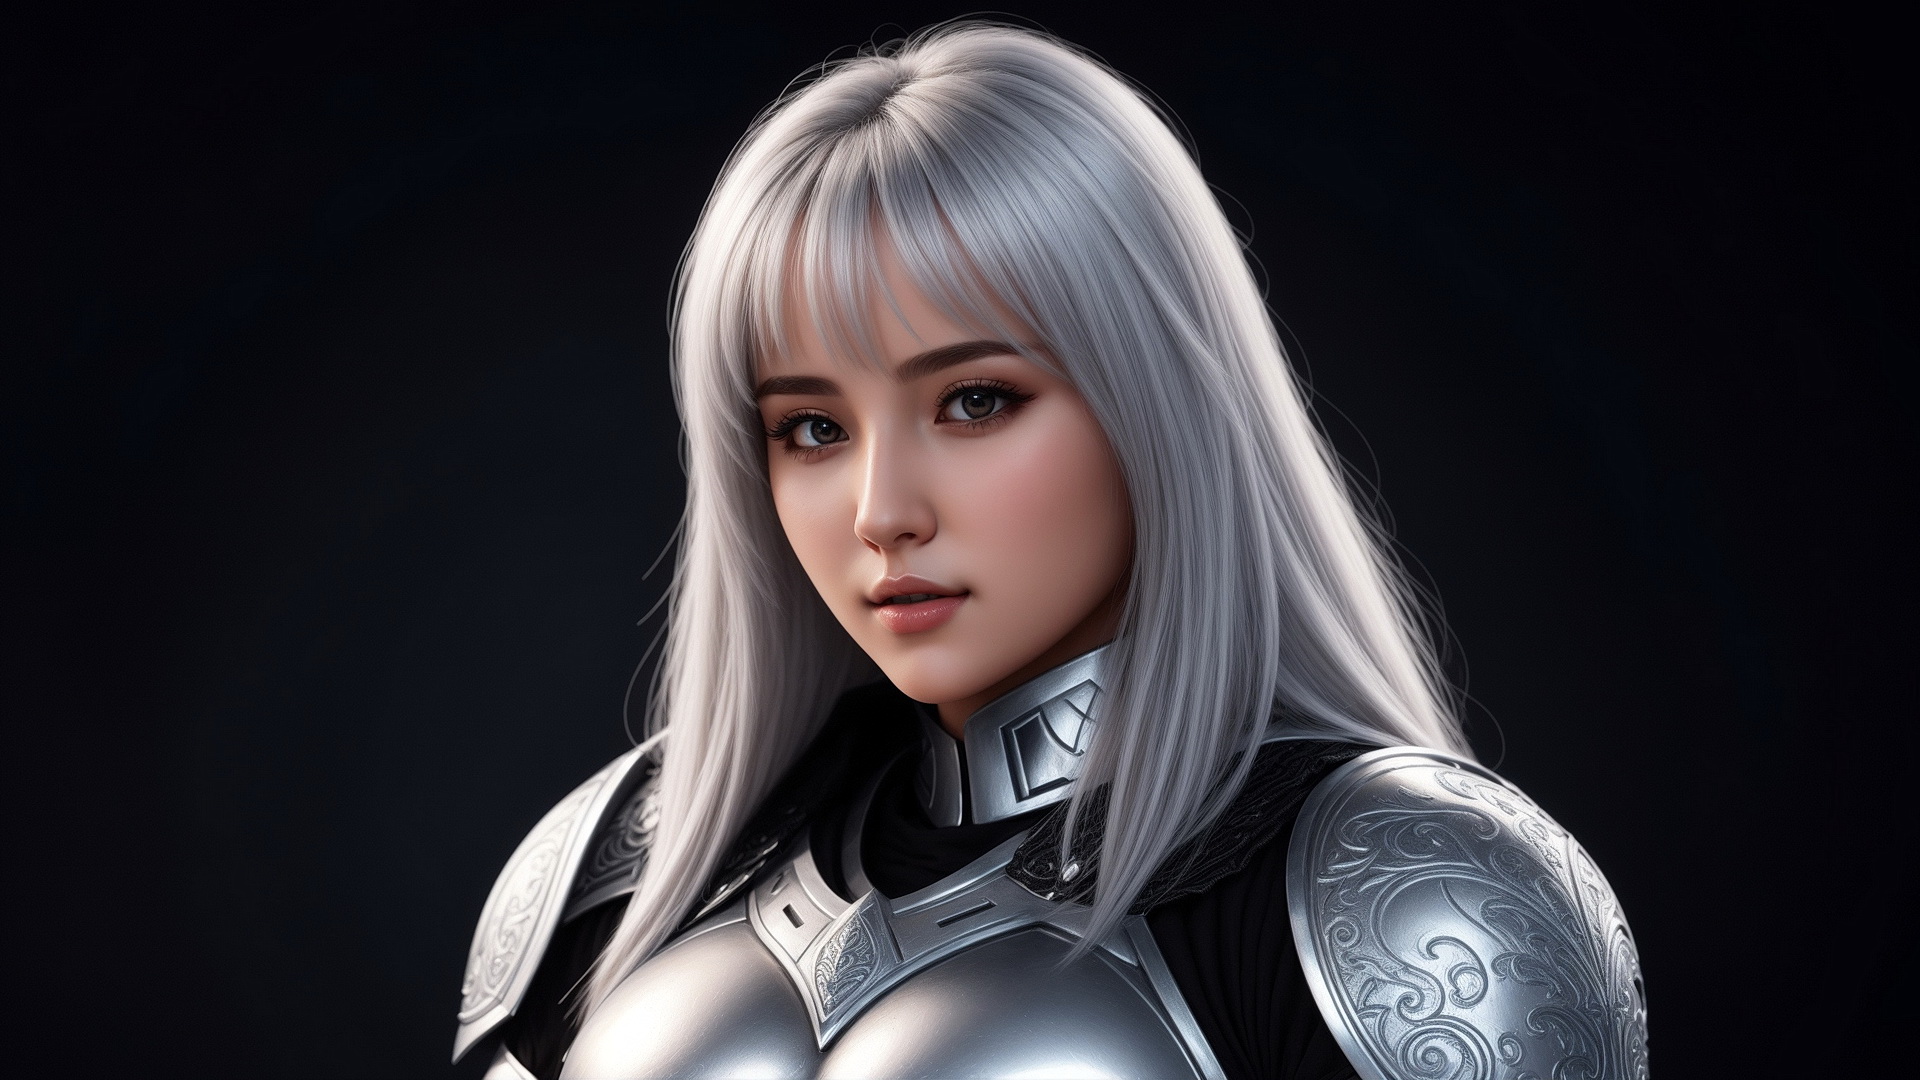 Портрет девушки рыцаря с белыми волосами на темном фоне